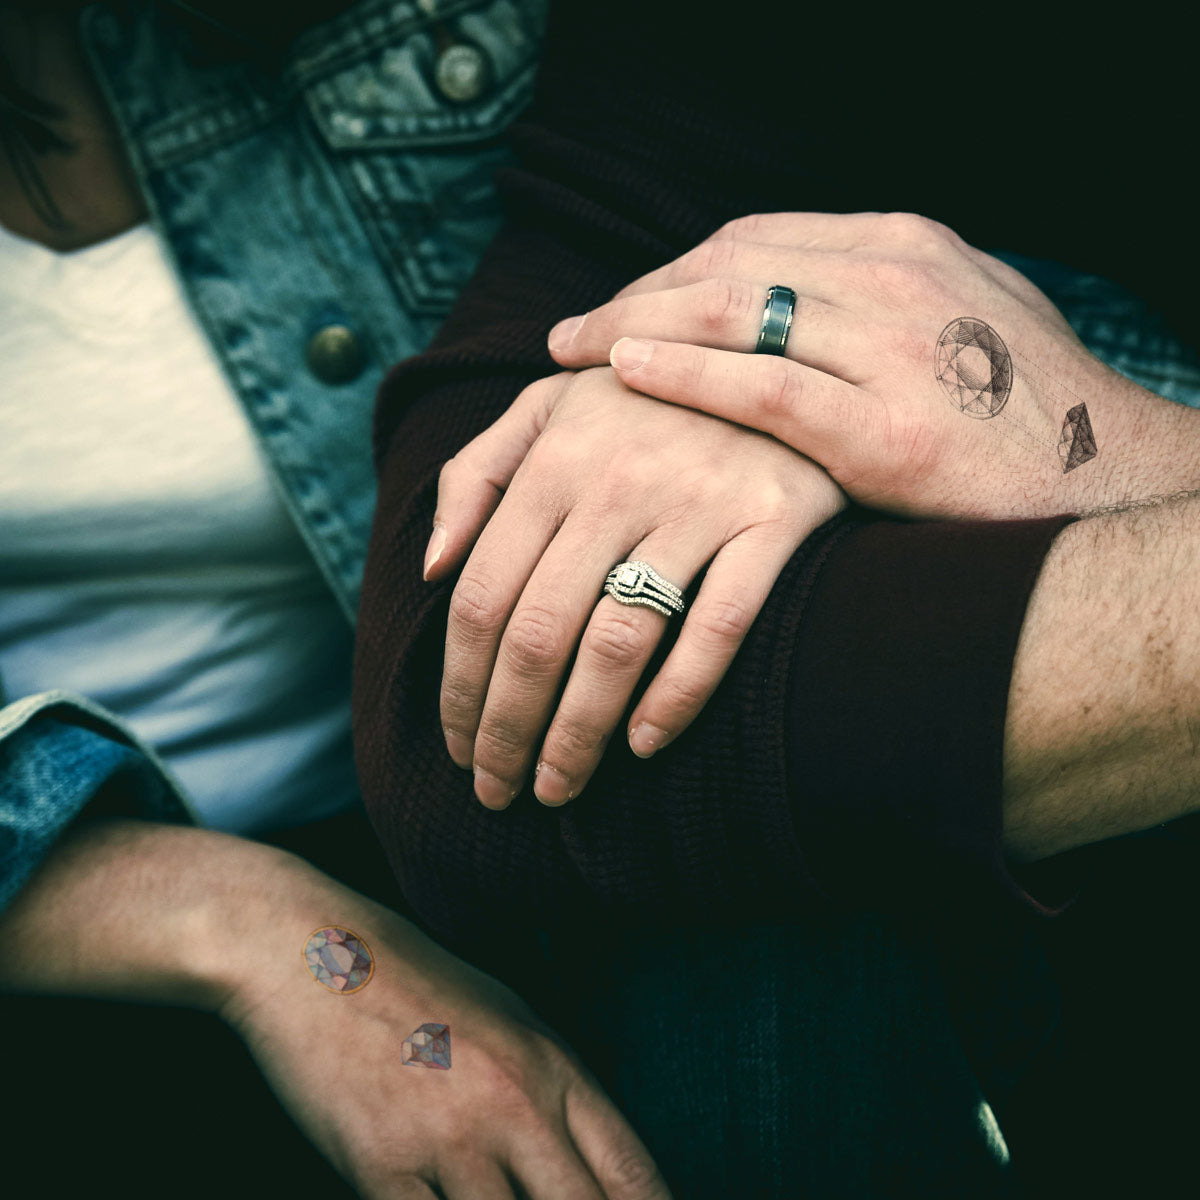 Hand tattoos - Best Tattoo Ideas Gallery